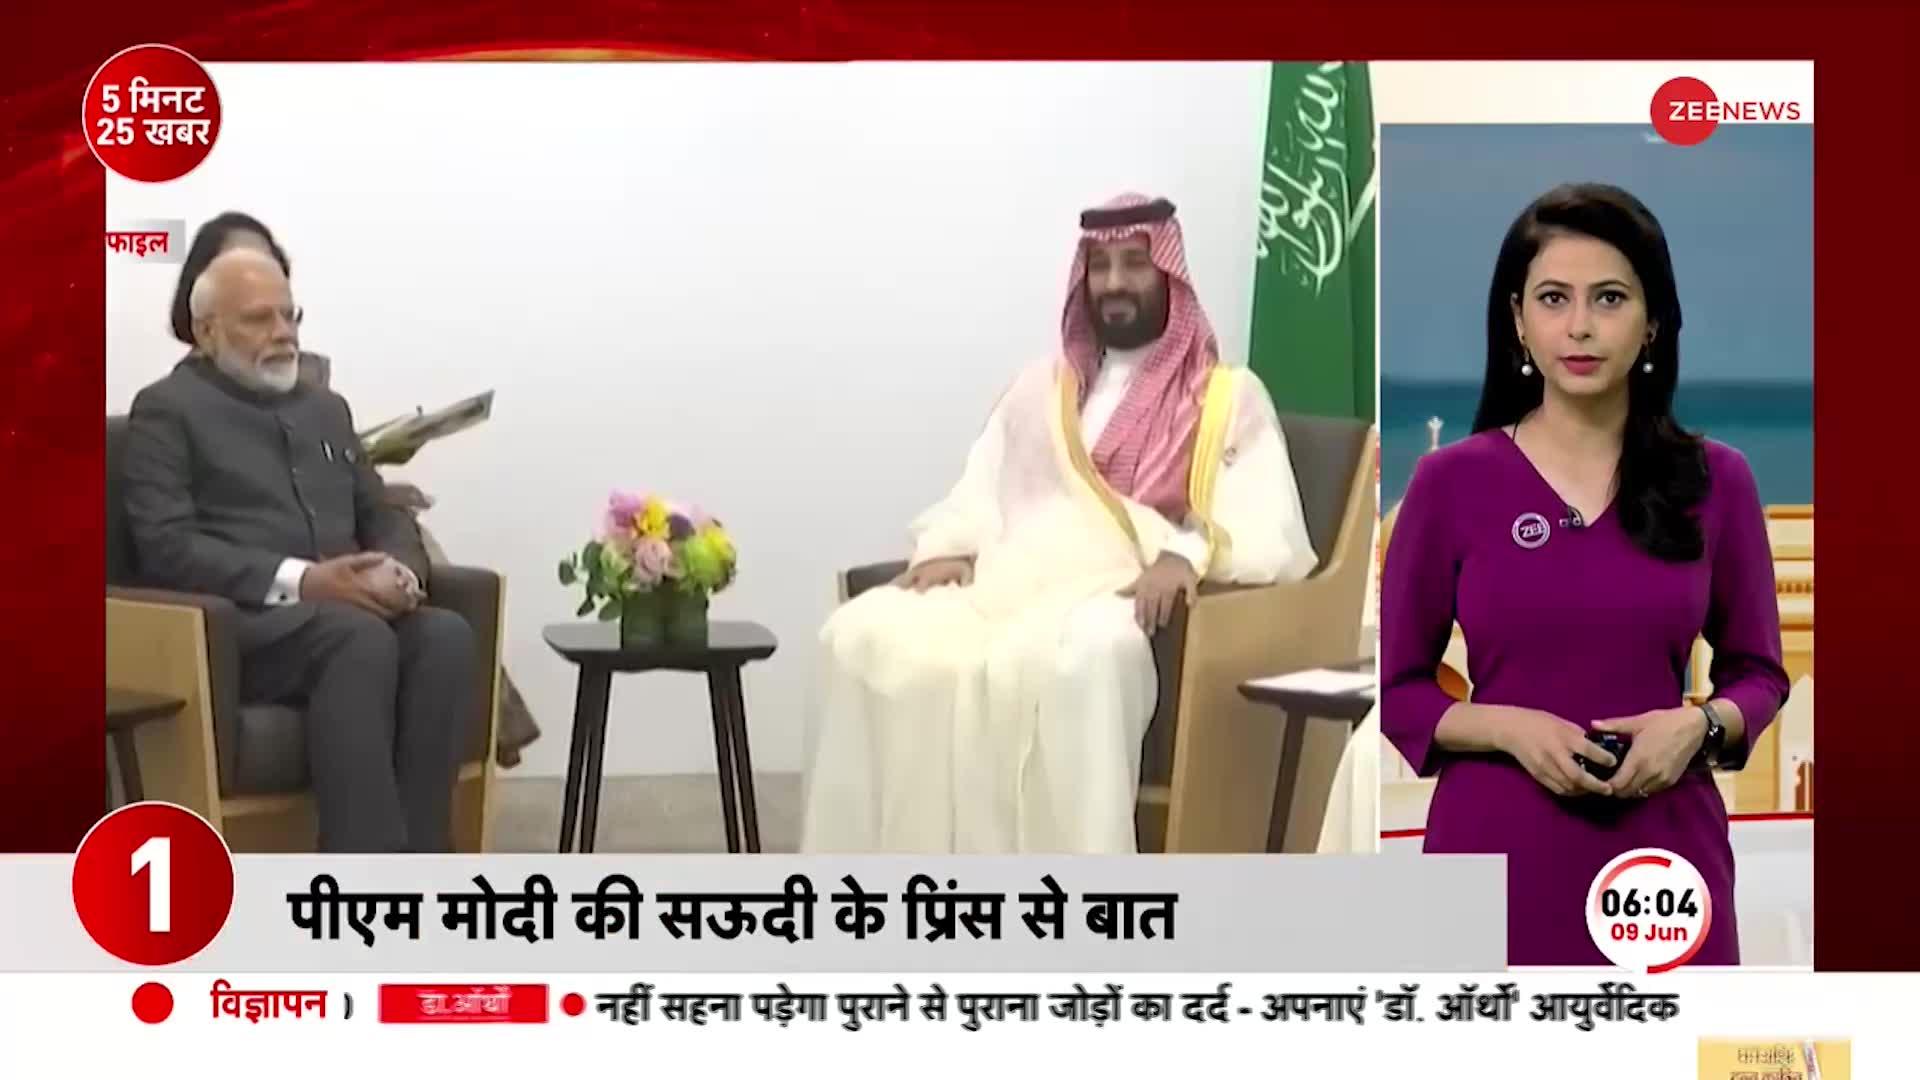 PM Modi ने सऊदी अरब के क्राउन प्रिंस से की बात, कई मुद्दों पर हुई चर्चा